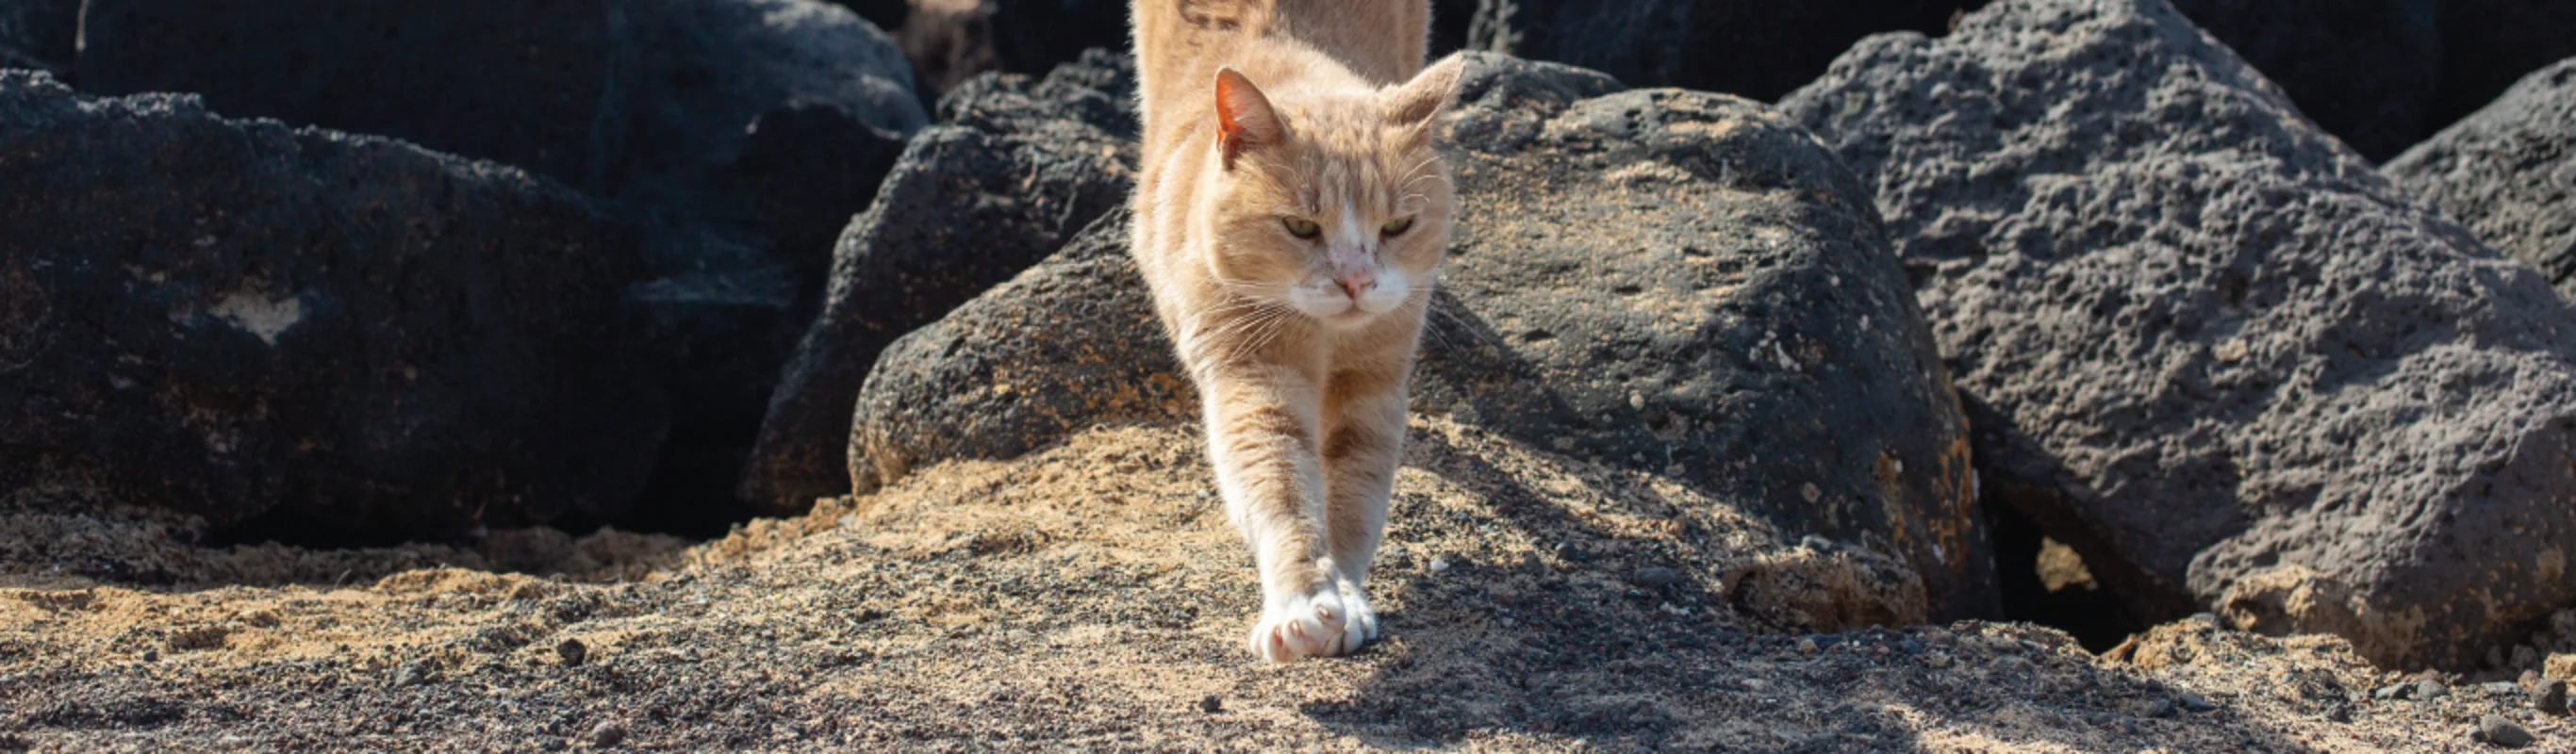 Orange Tabby Cat Walking Down a Pile of Rocks on a beach.